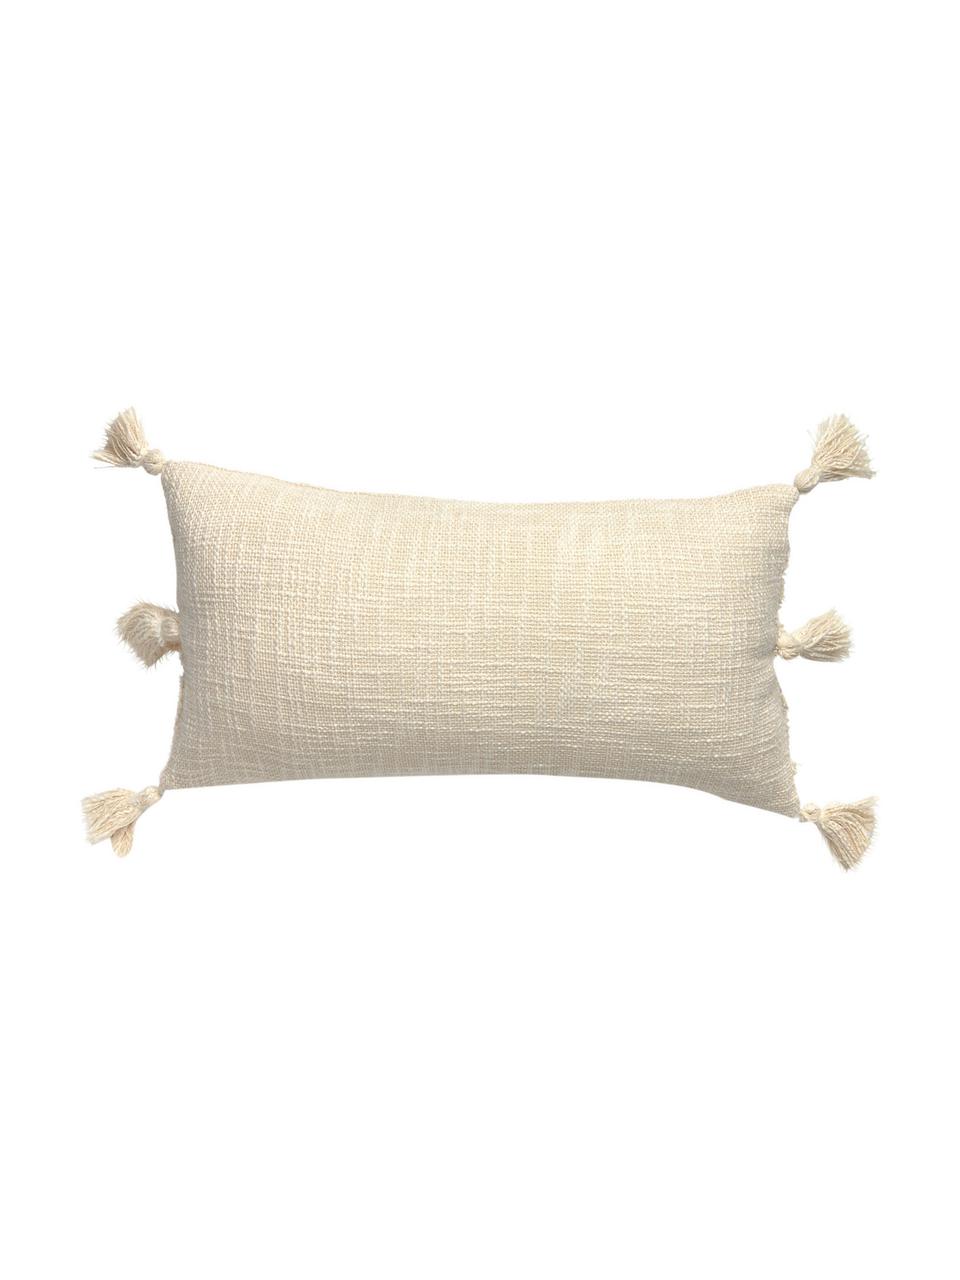 Boho Kissenhülle Hera mit Hoch-Tief-Muster und Quasten, 100% Baumwolle, Cremefarben, 30 x 60 cm